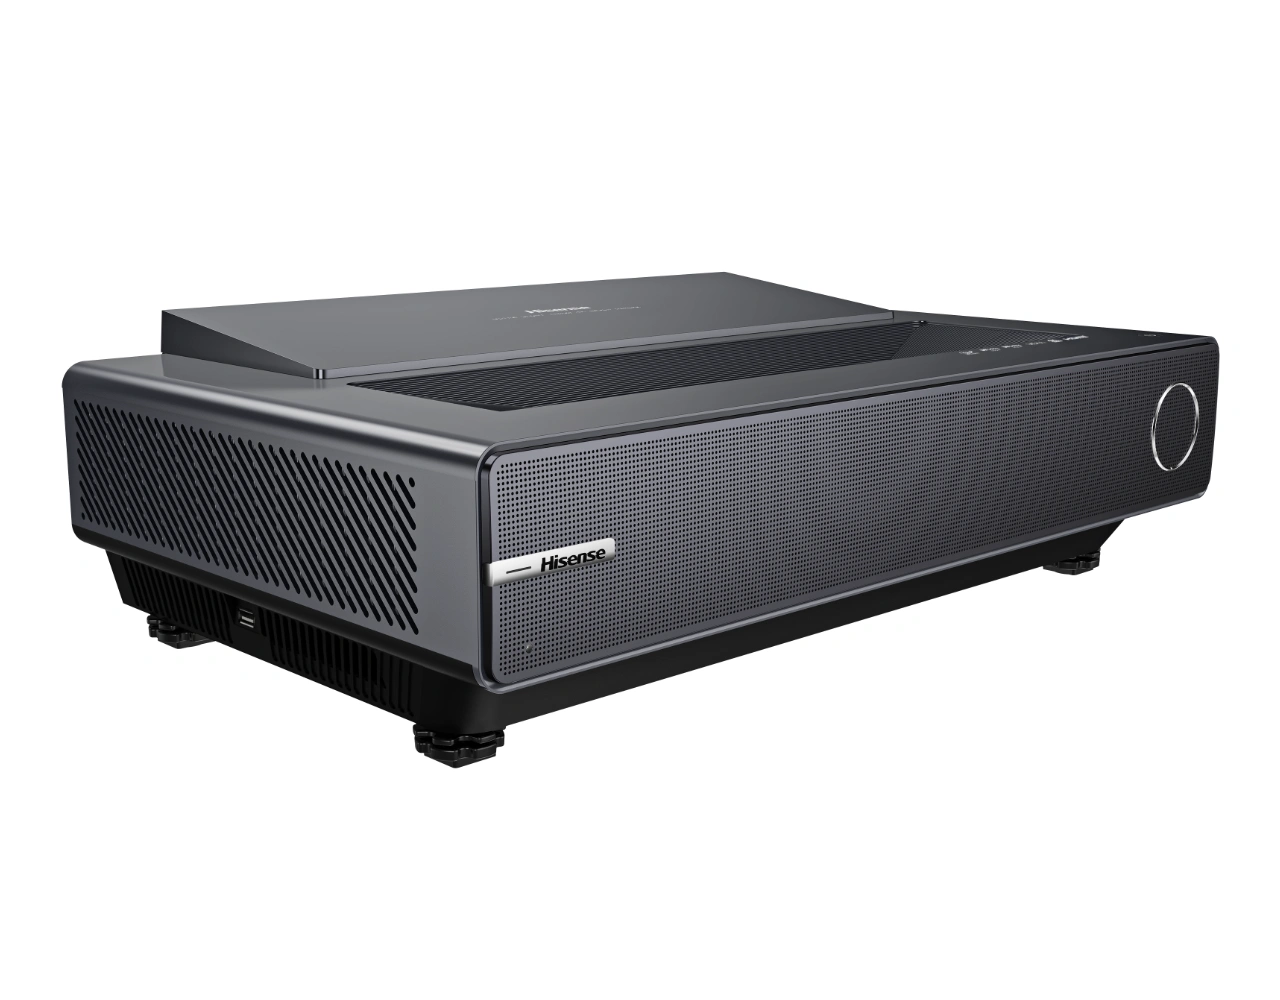 Hisense PX2-PRO 4K UHD laser TV